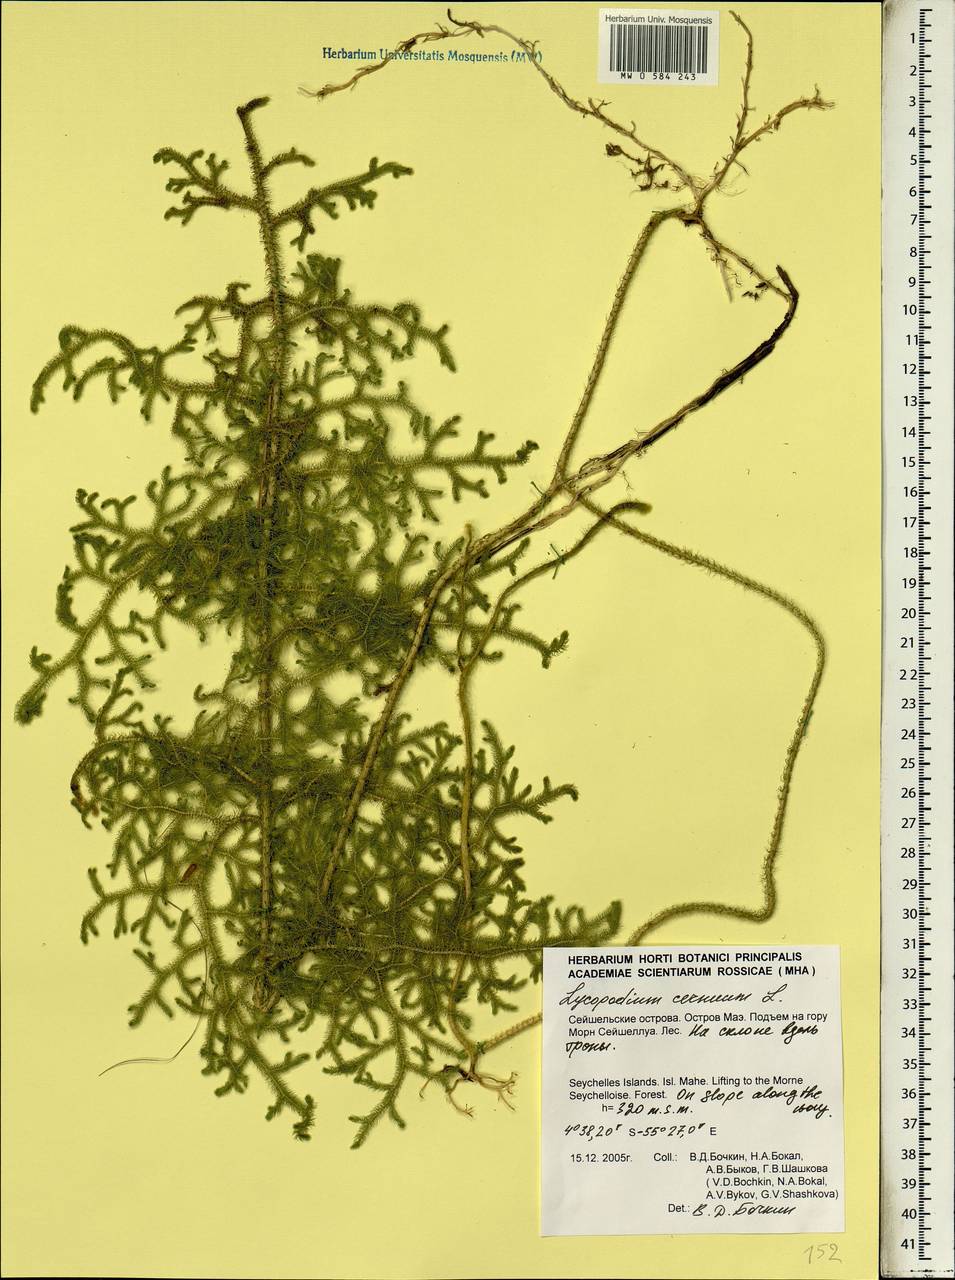 Palhinhaea cernua (L.) Vasc. & Franco, Африка (AFR) (Сейшельские острова)